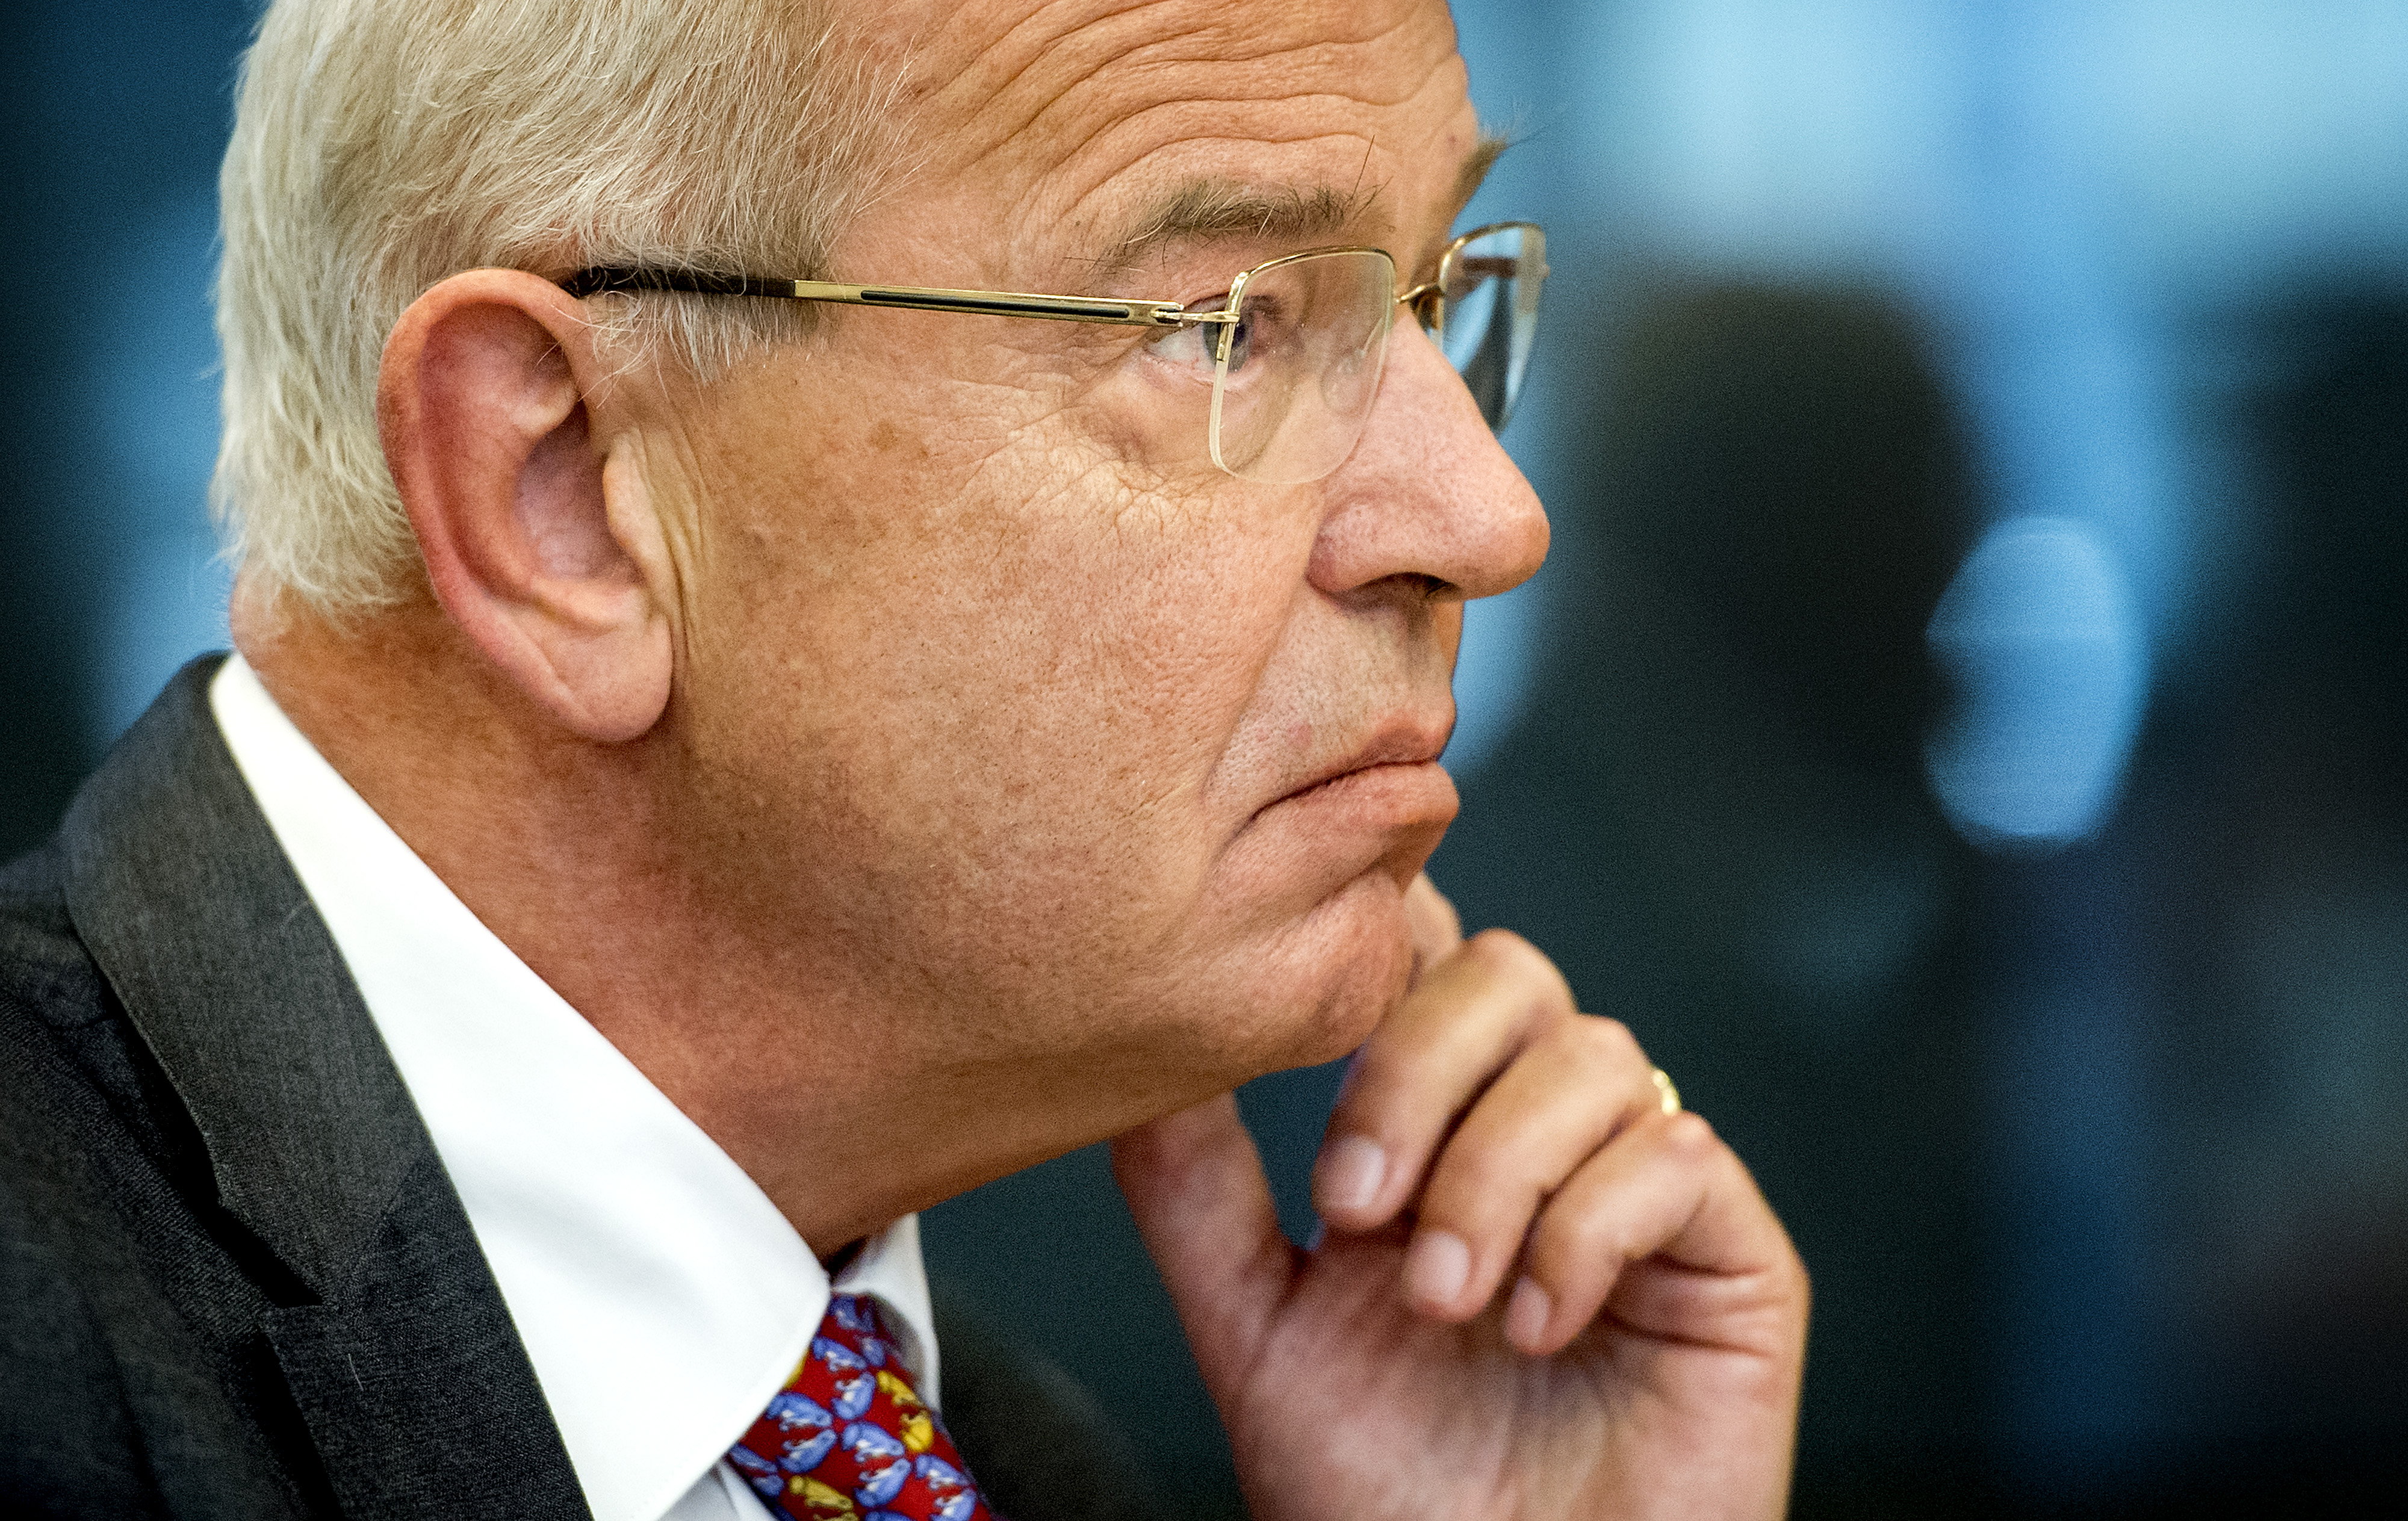 Ministers worden in Nederland "slecht betaald", vindt vertrekkend topman van ABN Amro Gerrit Zalm. Maar ministers worden op een andere manier beloond, zegt hij in een interview met NRC.